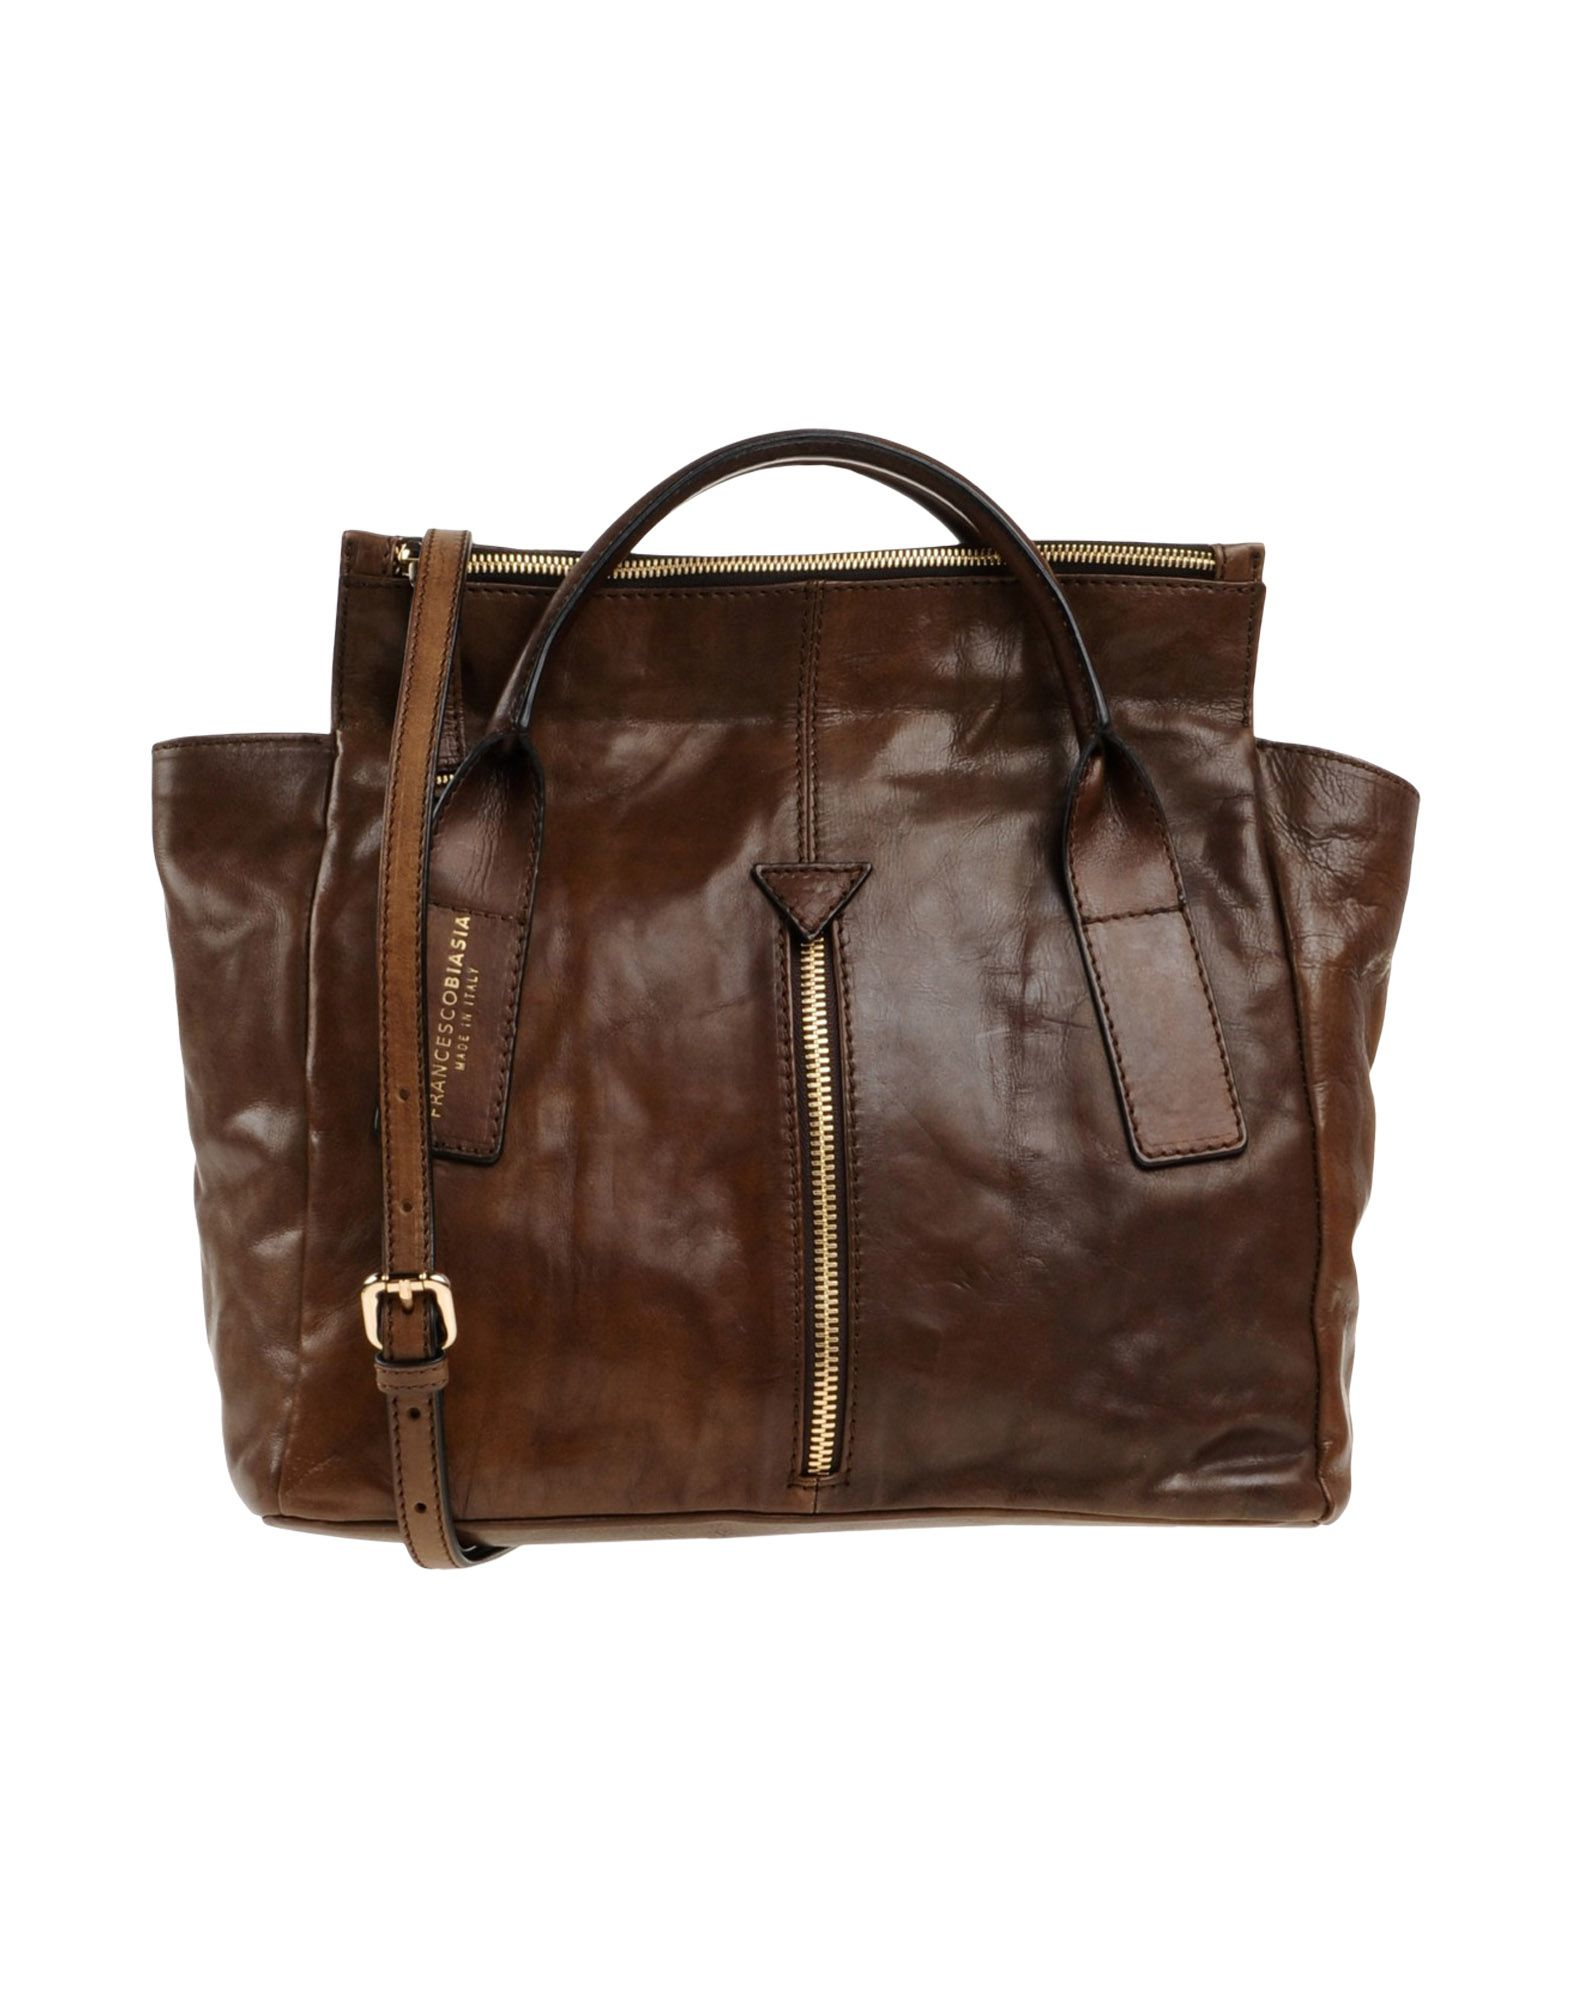 Francesco biasia Handbag in Brown | Lyst